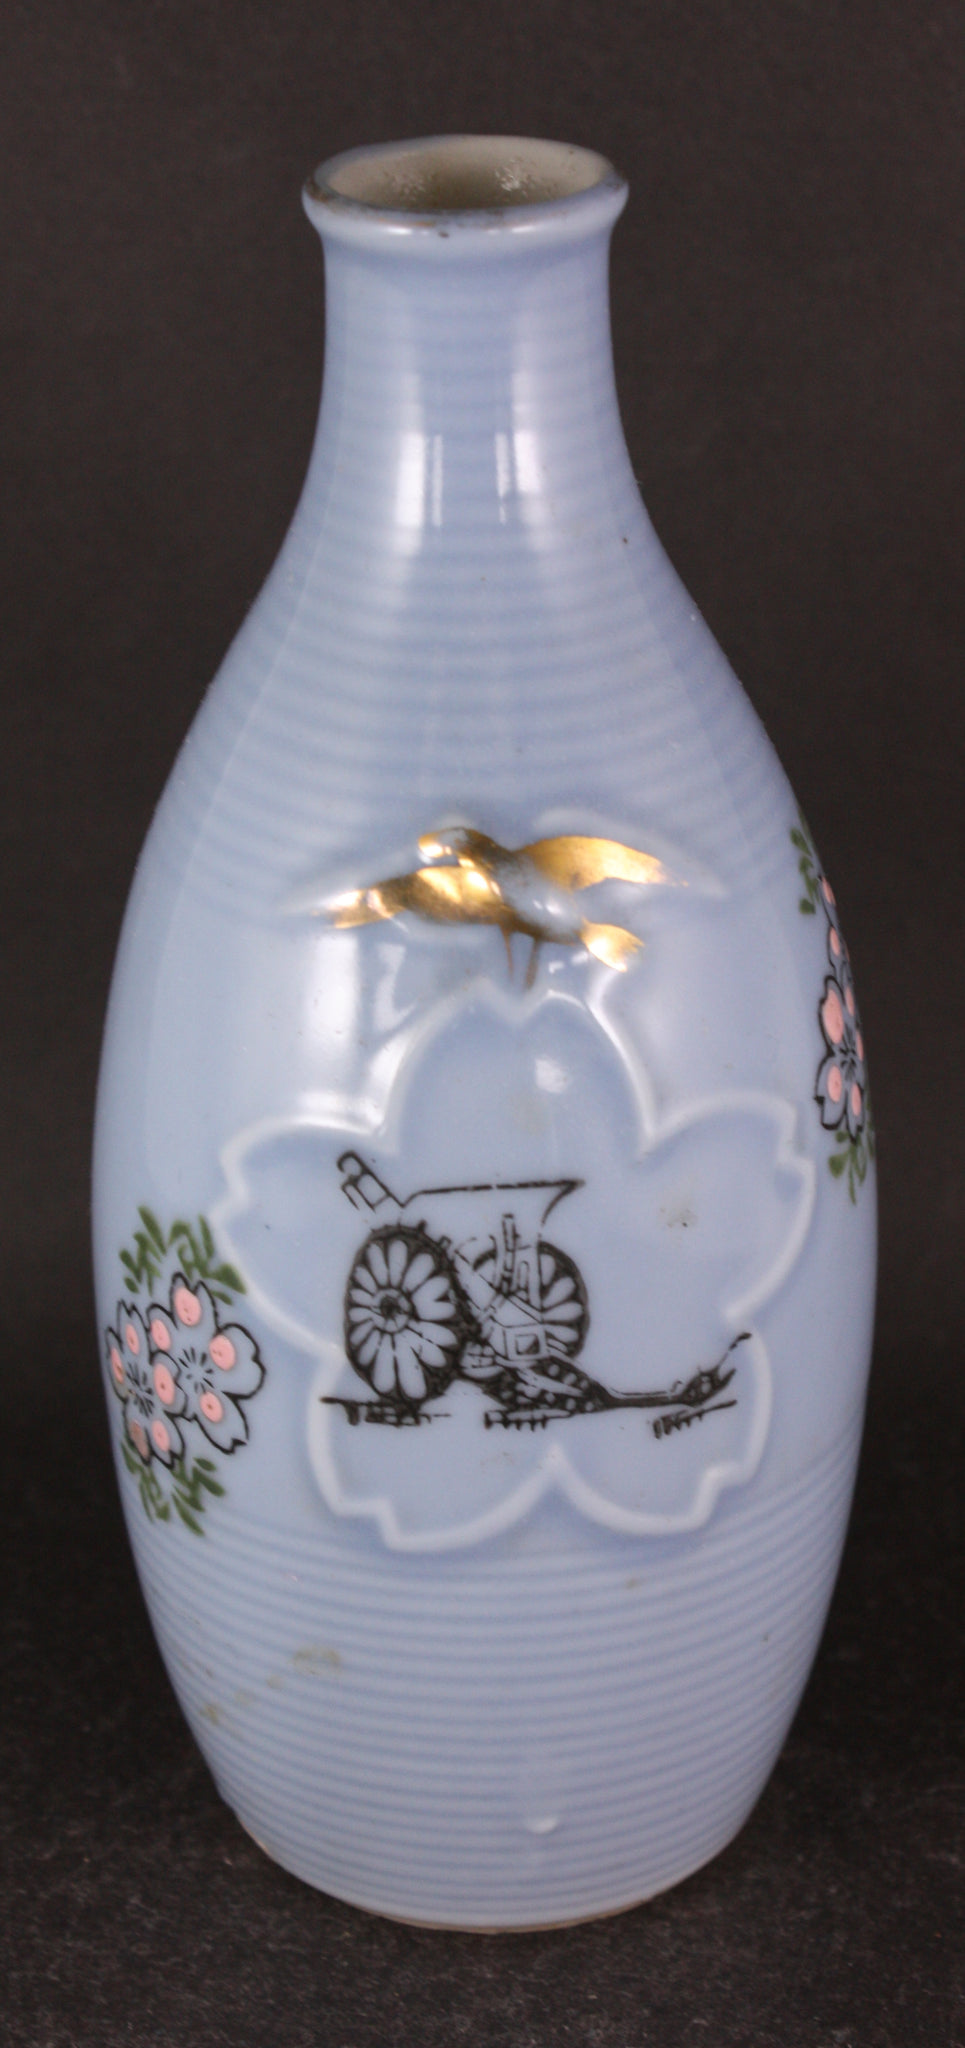 Antique Japanese Military Artillery Embossed Golden Kite Army Sake Bottle